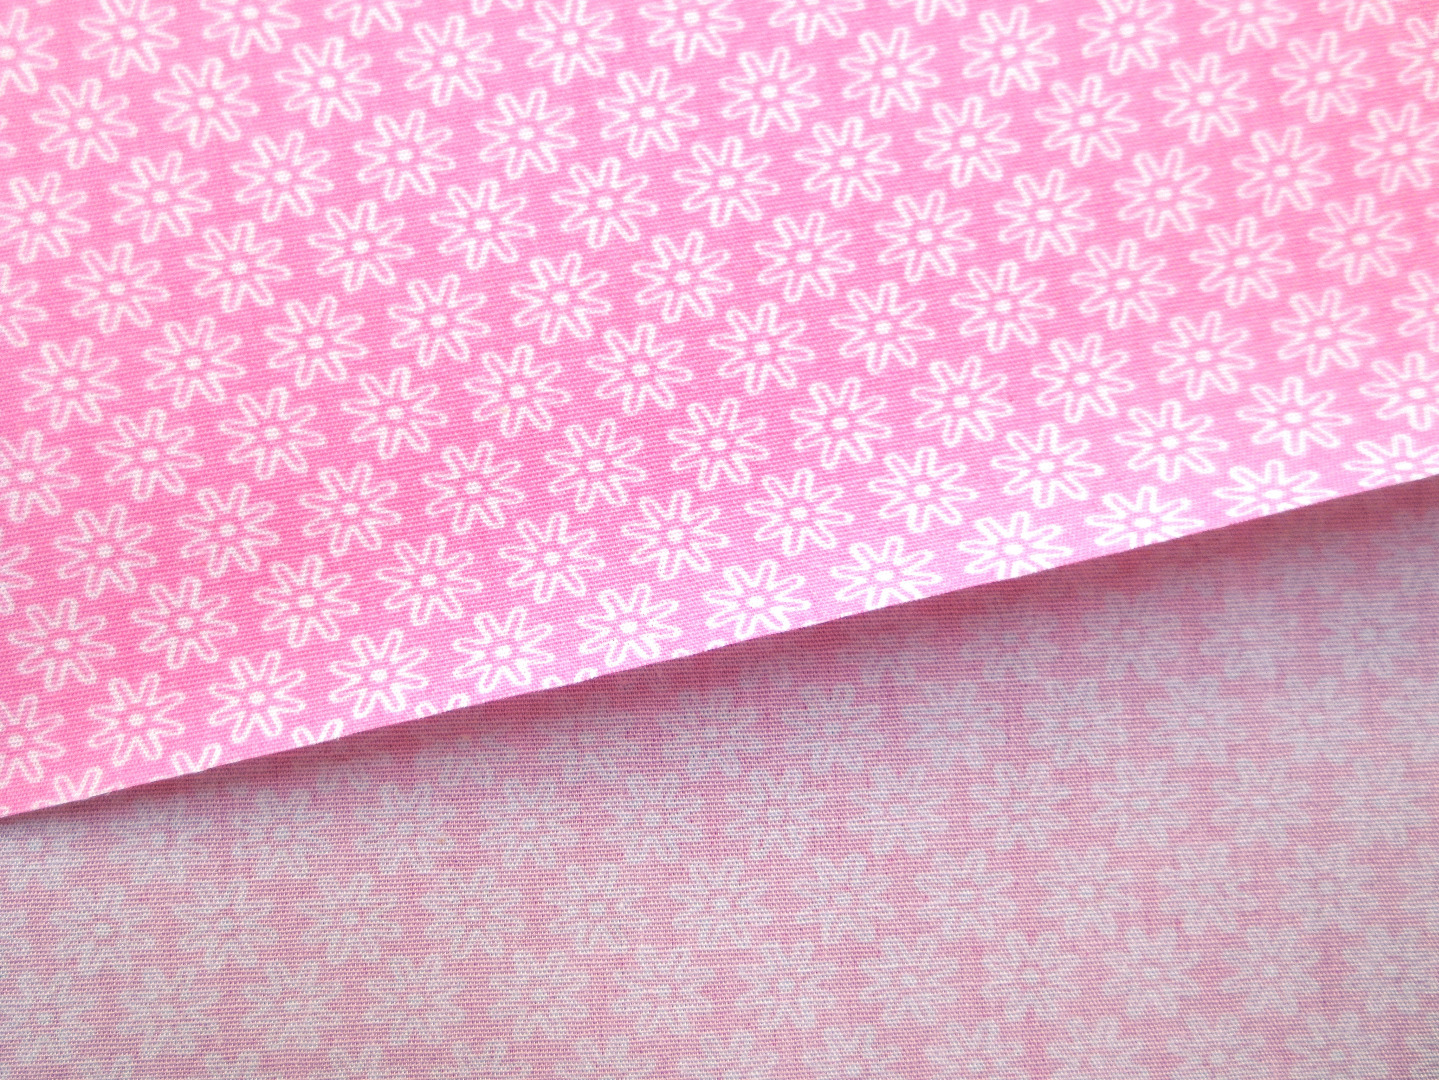 Stoff Blumen rosa - 100% Baumwolle 5